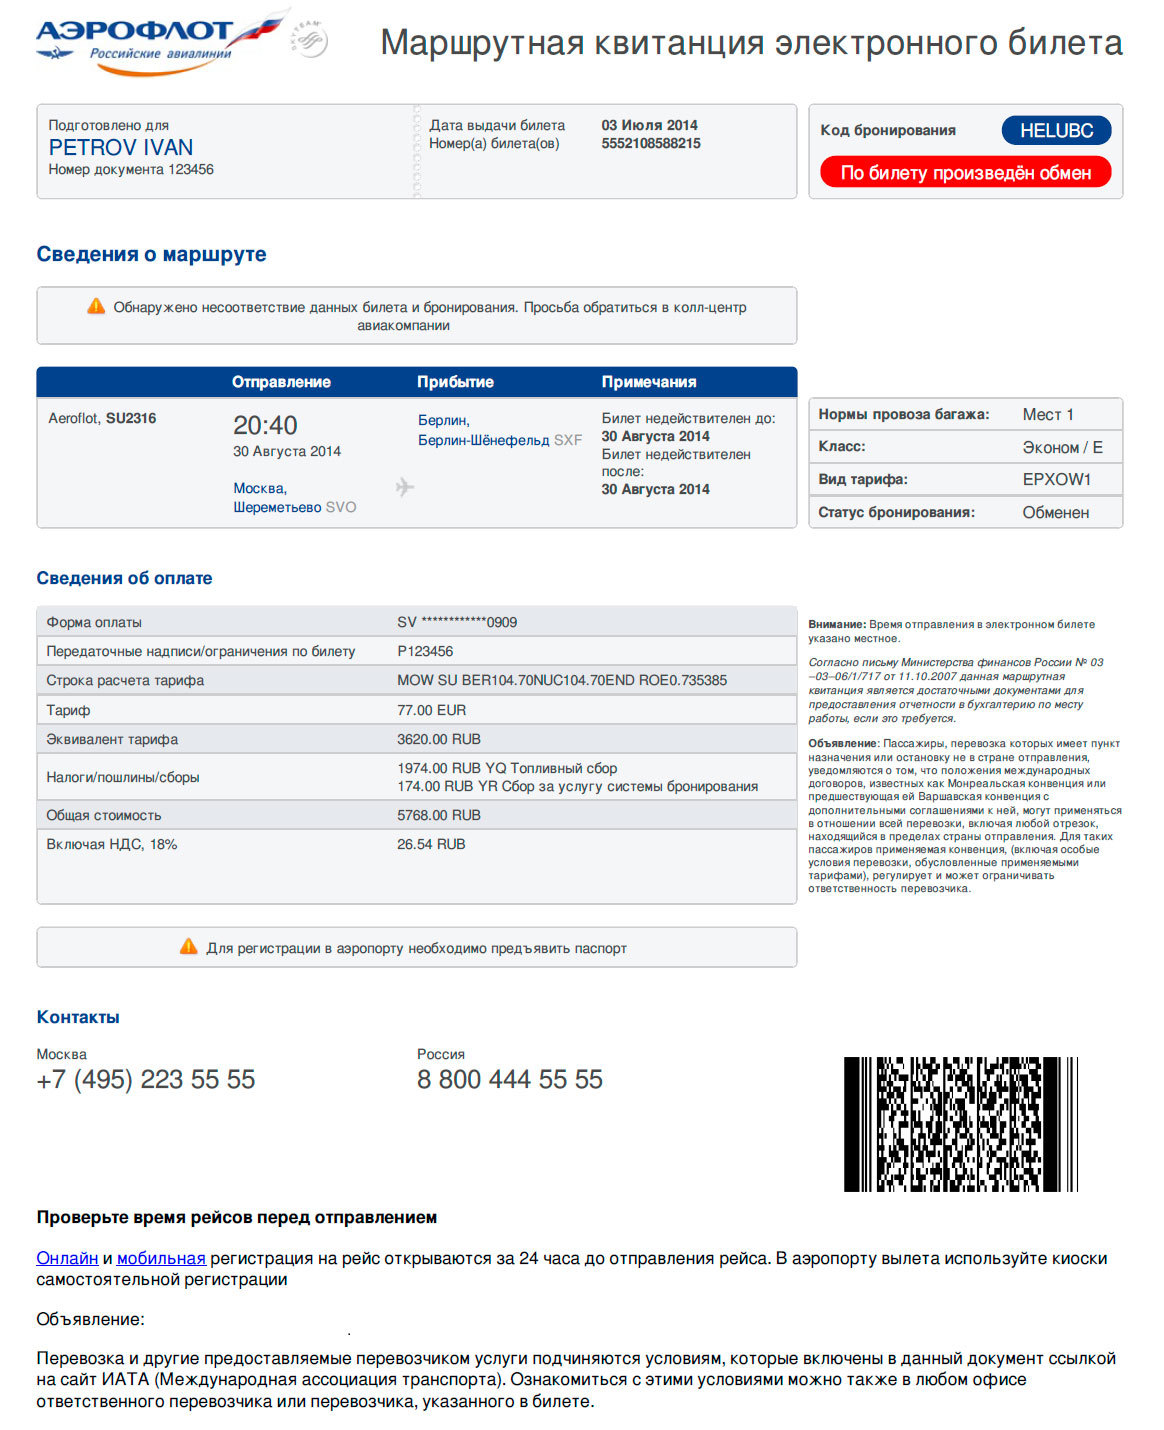 Нужен ли авиабилет. Как выглядит электронный билет на самолет. Как выглядит маршрутная квитанция электронного билета на самолет. Как выглядит распечатка электронного билета на самолет. Маршрутная квитанция электронного билета Аэрофлот 2022.